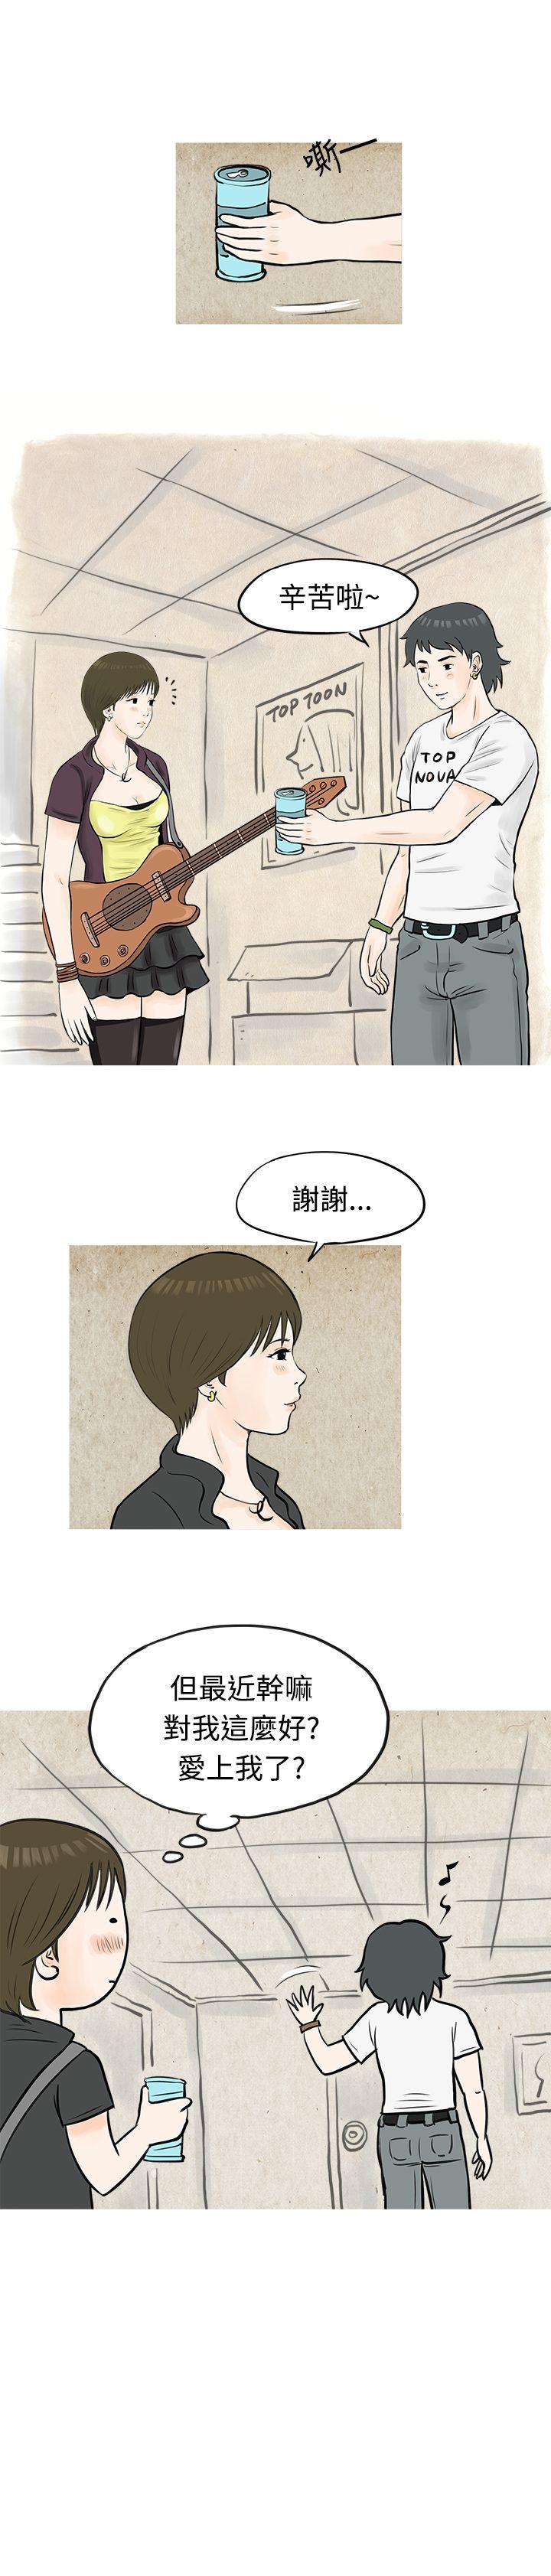 韩国污漫画 秘密Story 发生在热音社的小故事(下) 7